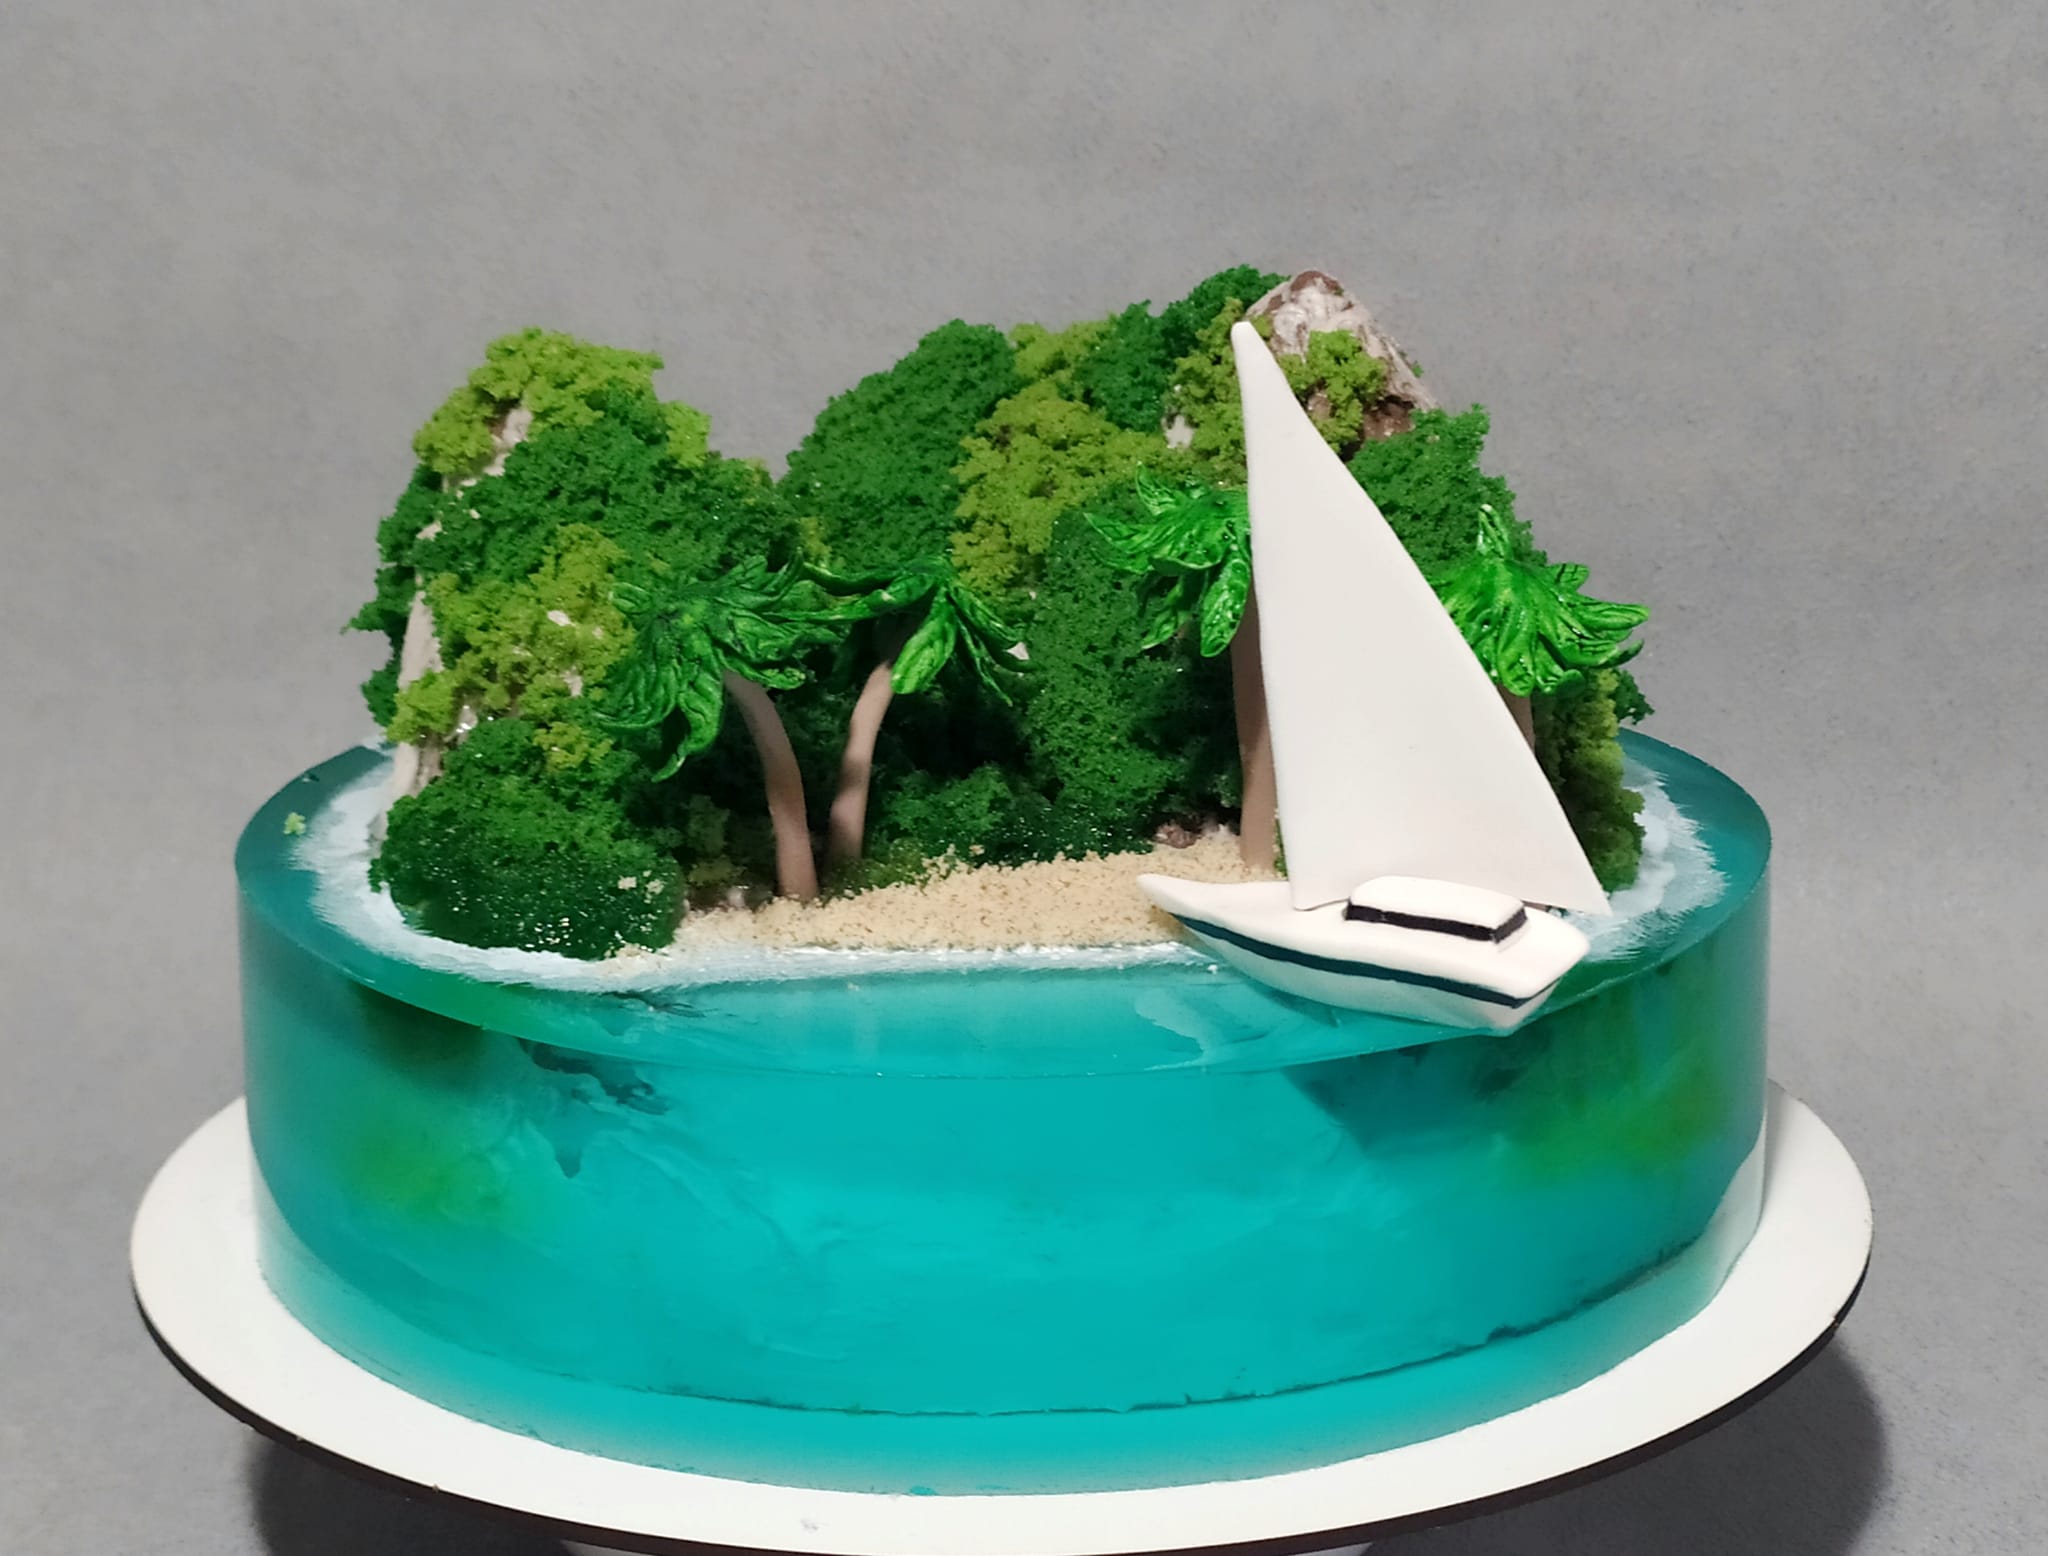 Новости Днепра про Кондитер из Днепра сделал торт в виде райского острова (ФОТО)